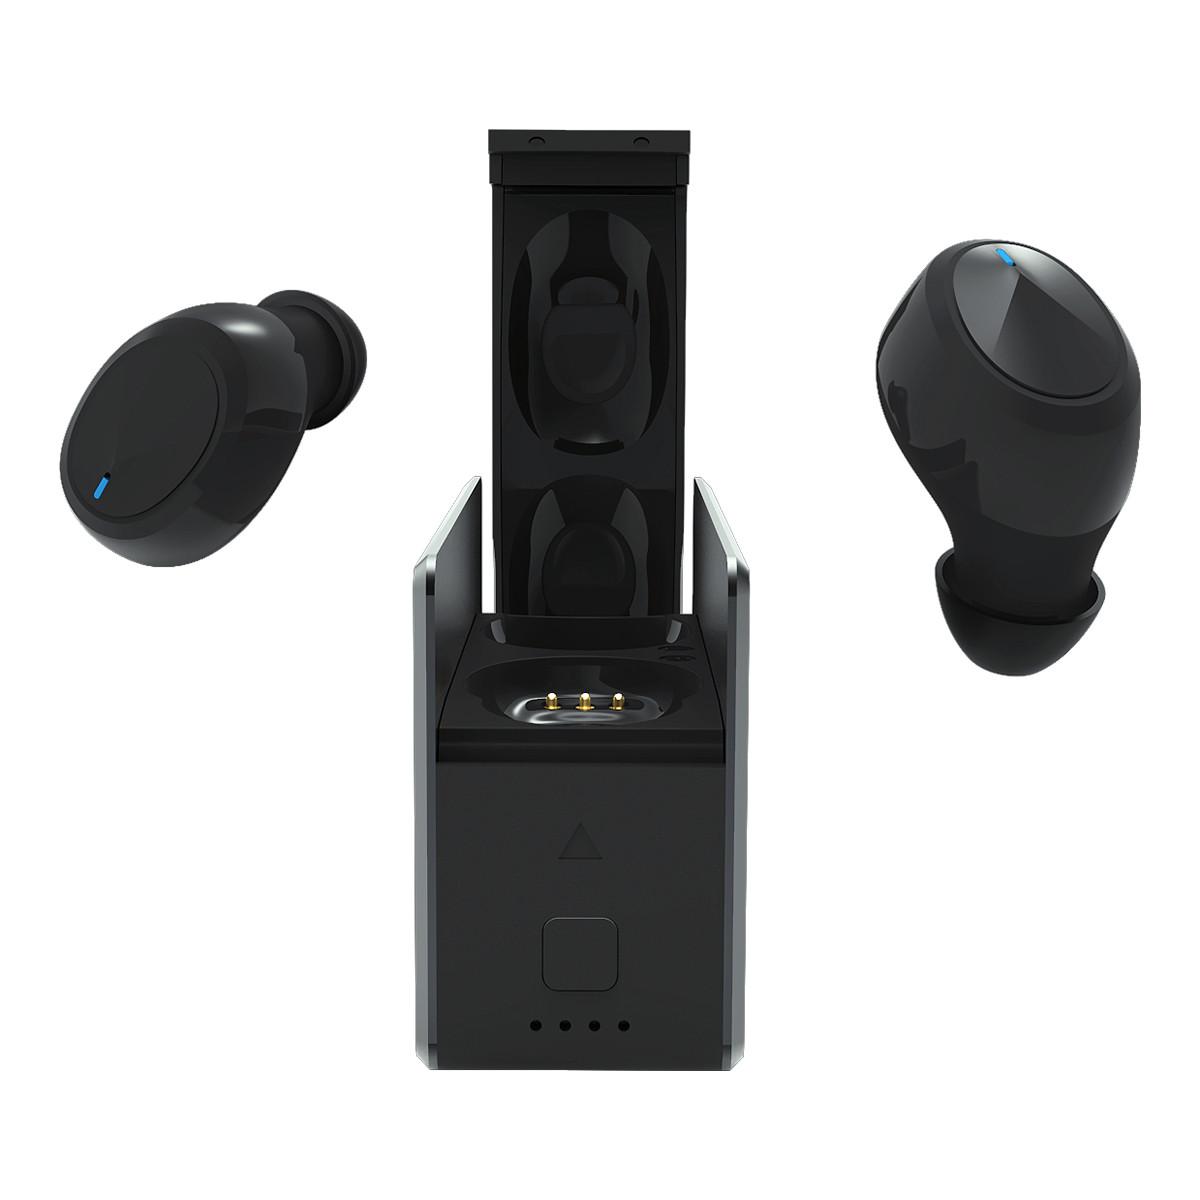 Samsung Kit Oreillette Bluetooth Essential Noir